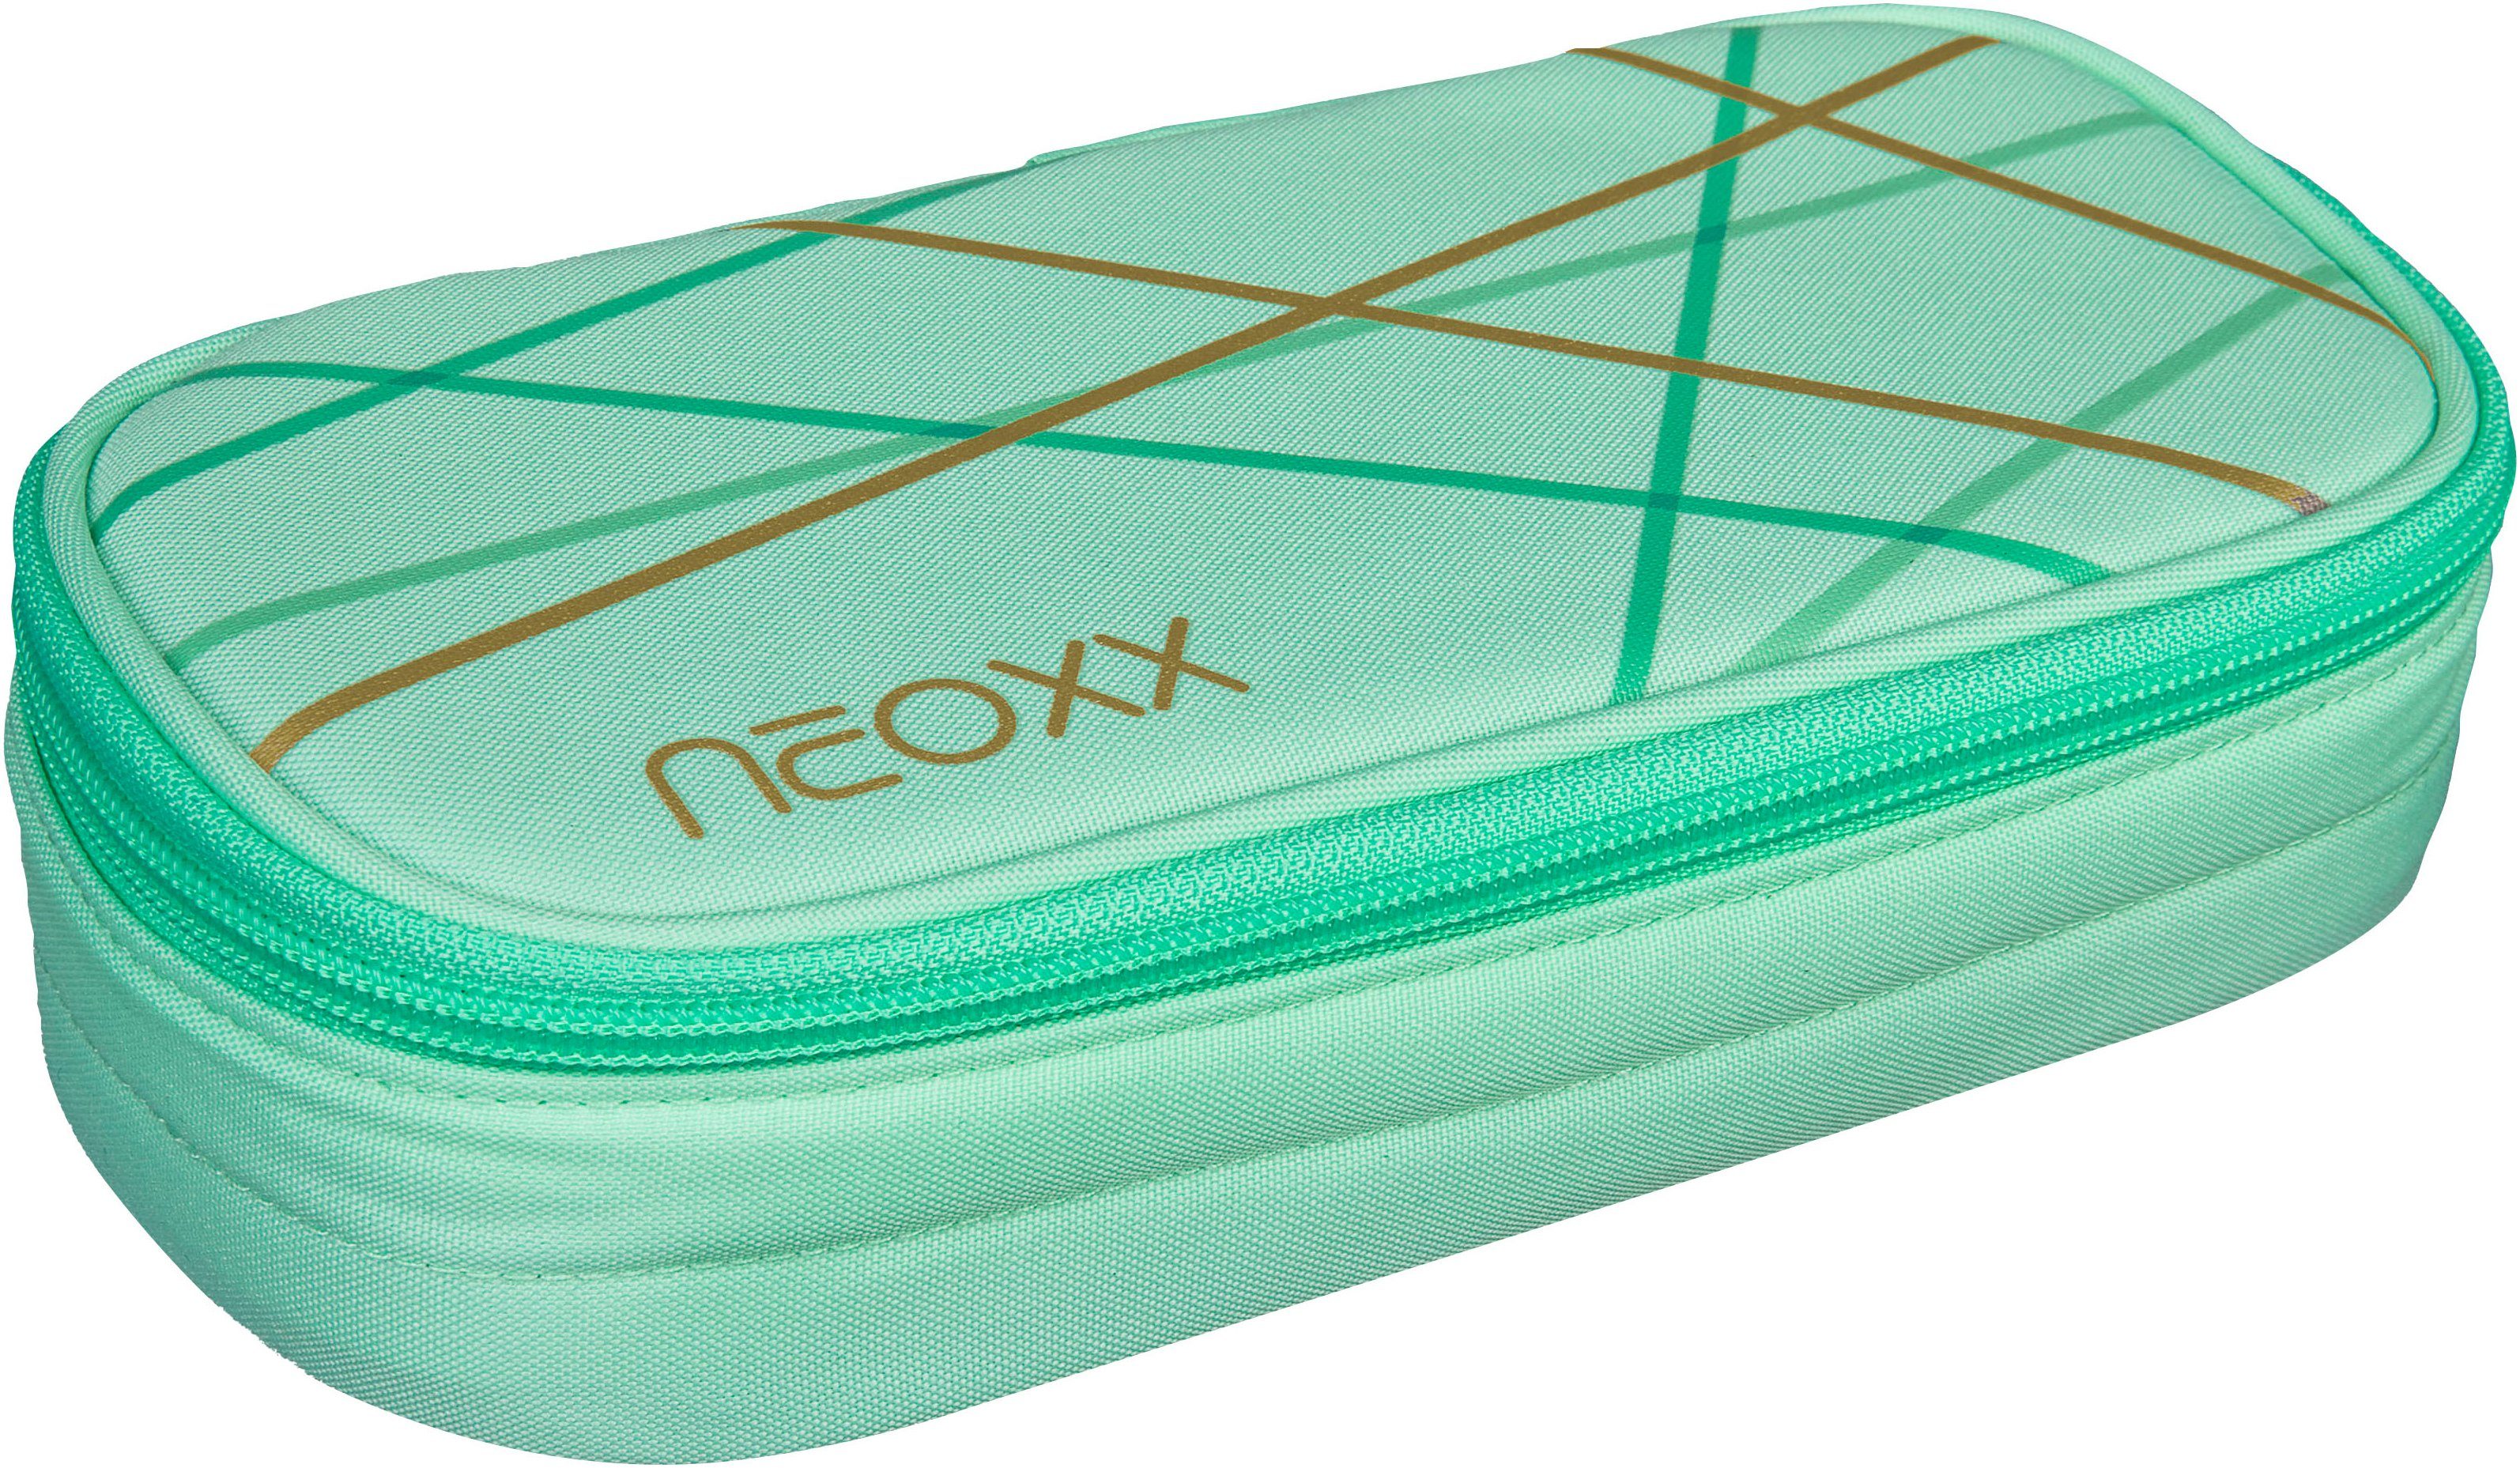 neoxx Schreibgeräteetui Schlamperbox, Jump, Mint To Be, teilweise aus recyceltem Material